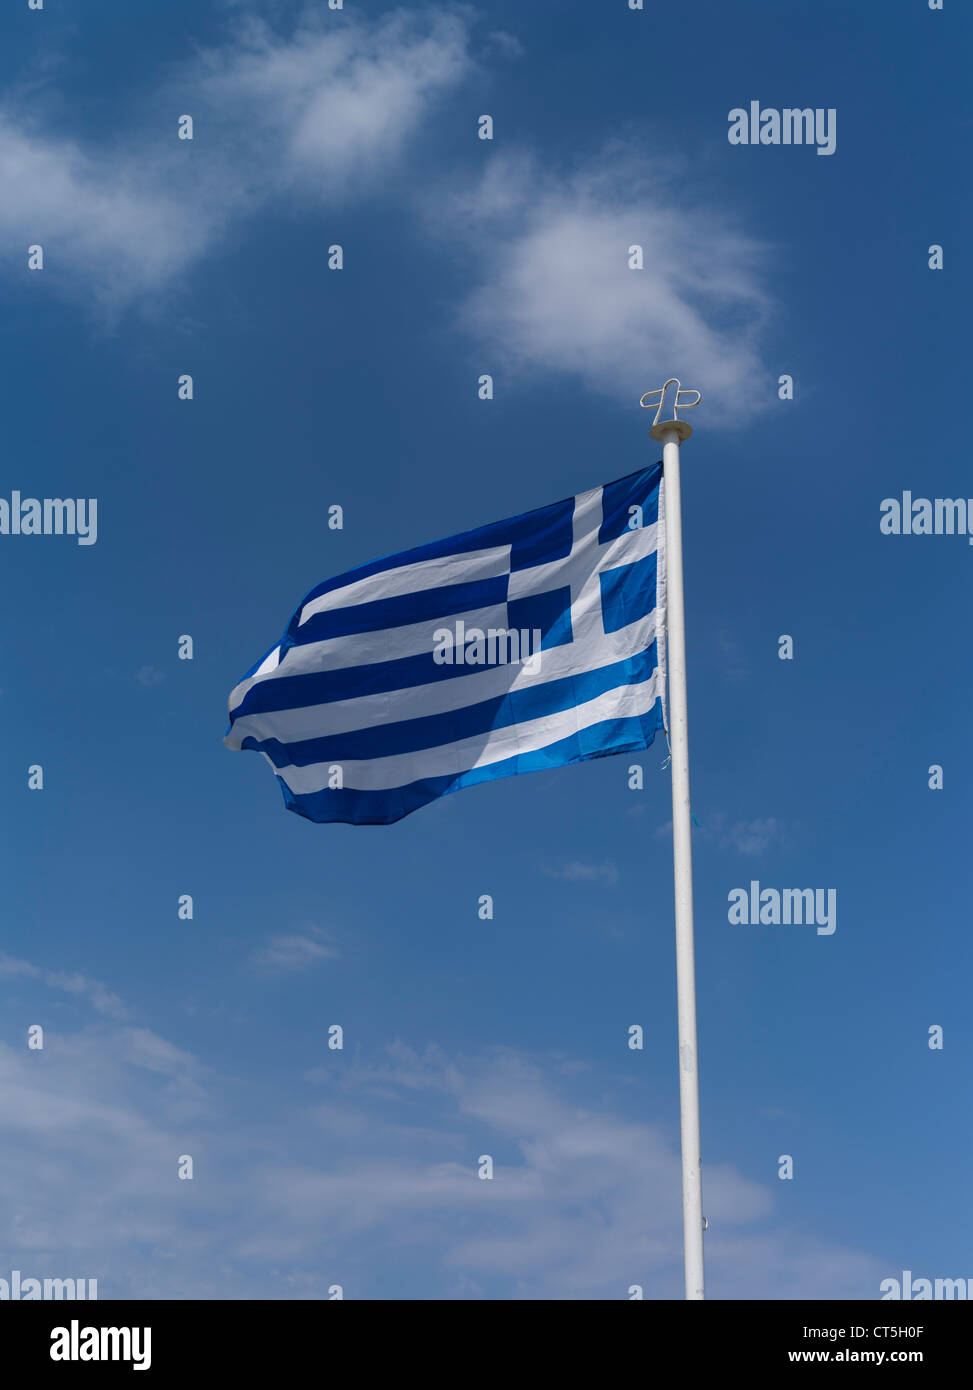 Dh bandiera greca bandiera Cipro Bandiera della Grecia sul pennone bianco blu cielo Foto Stock